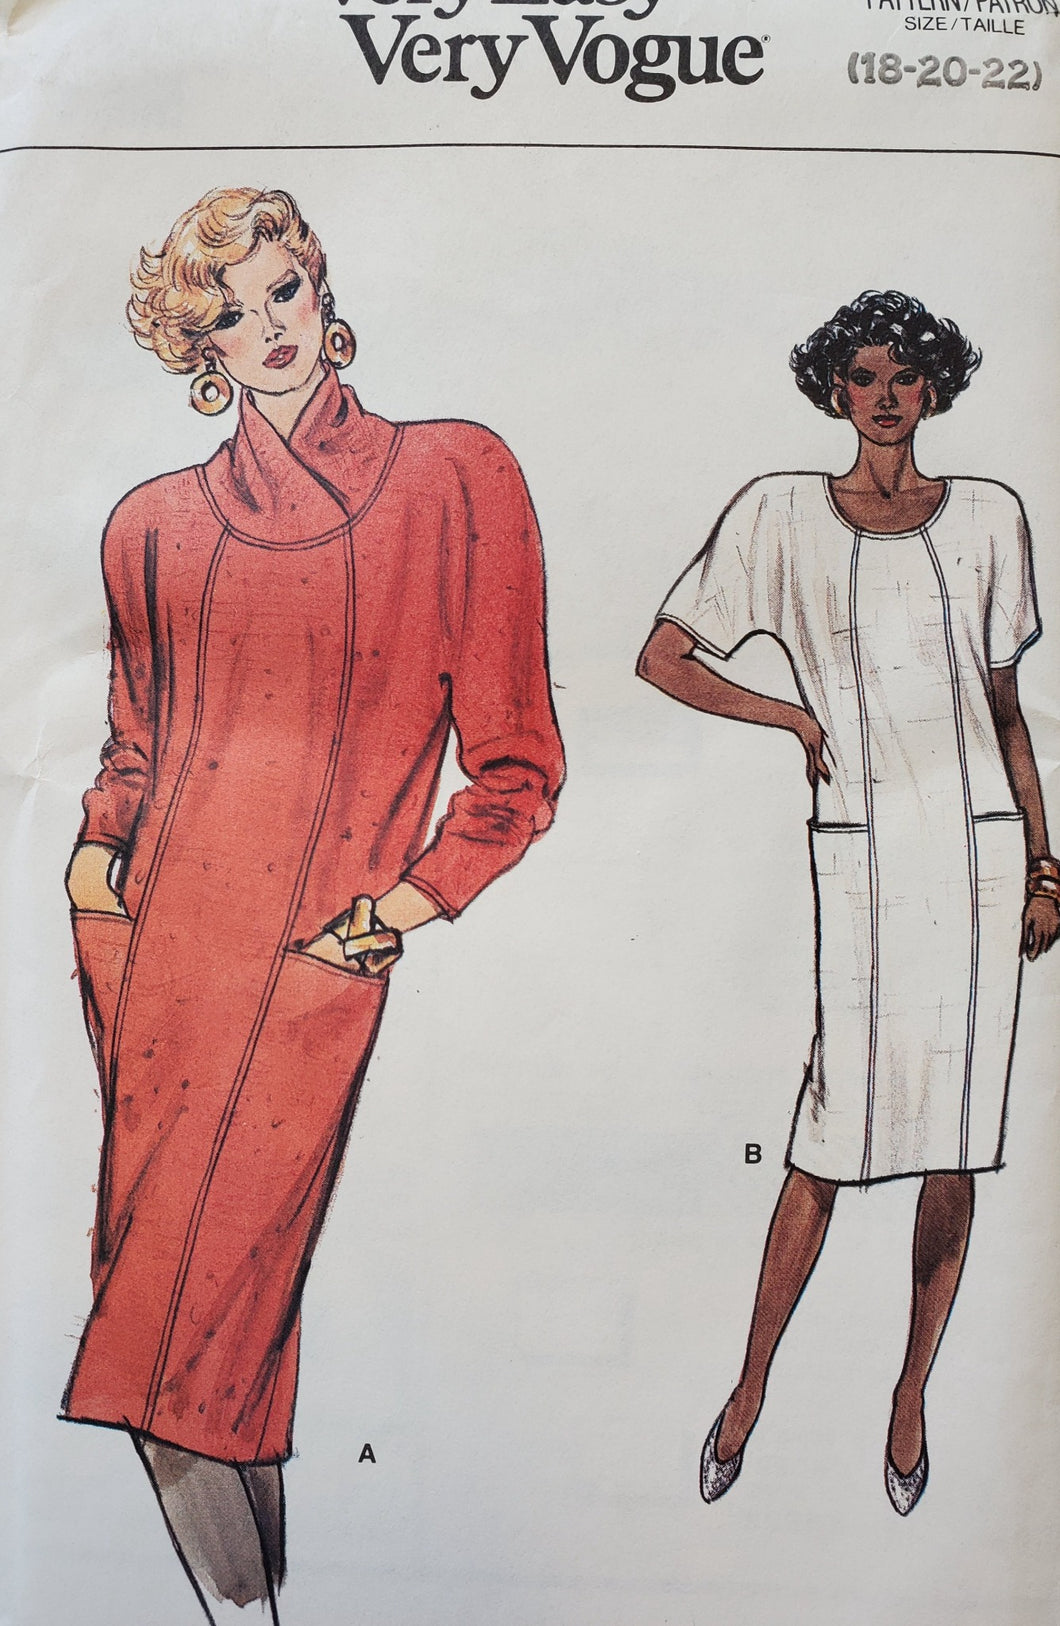 Vogue 9376 UNCUT Dress Size 18-20-22, Vintage 